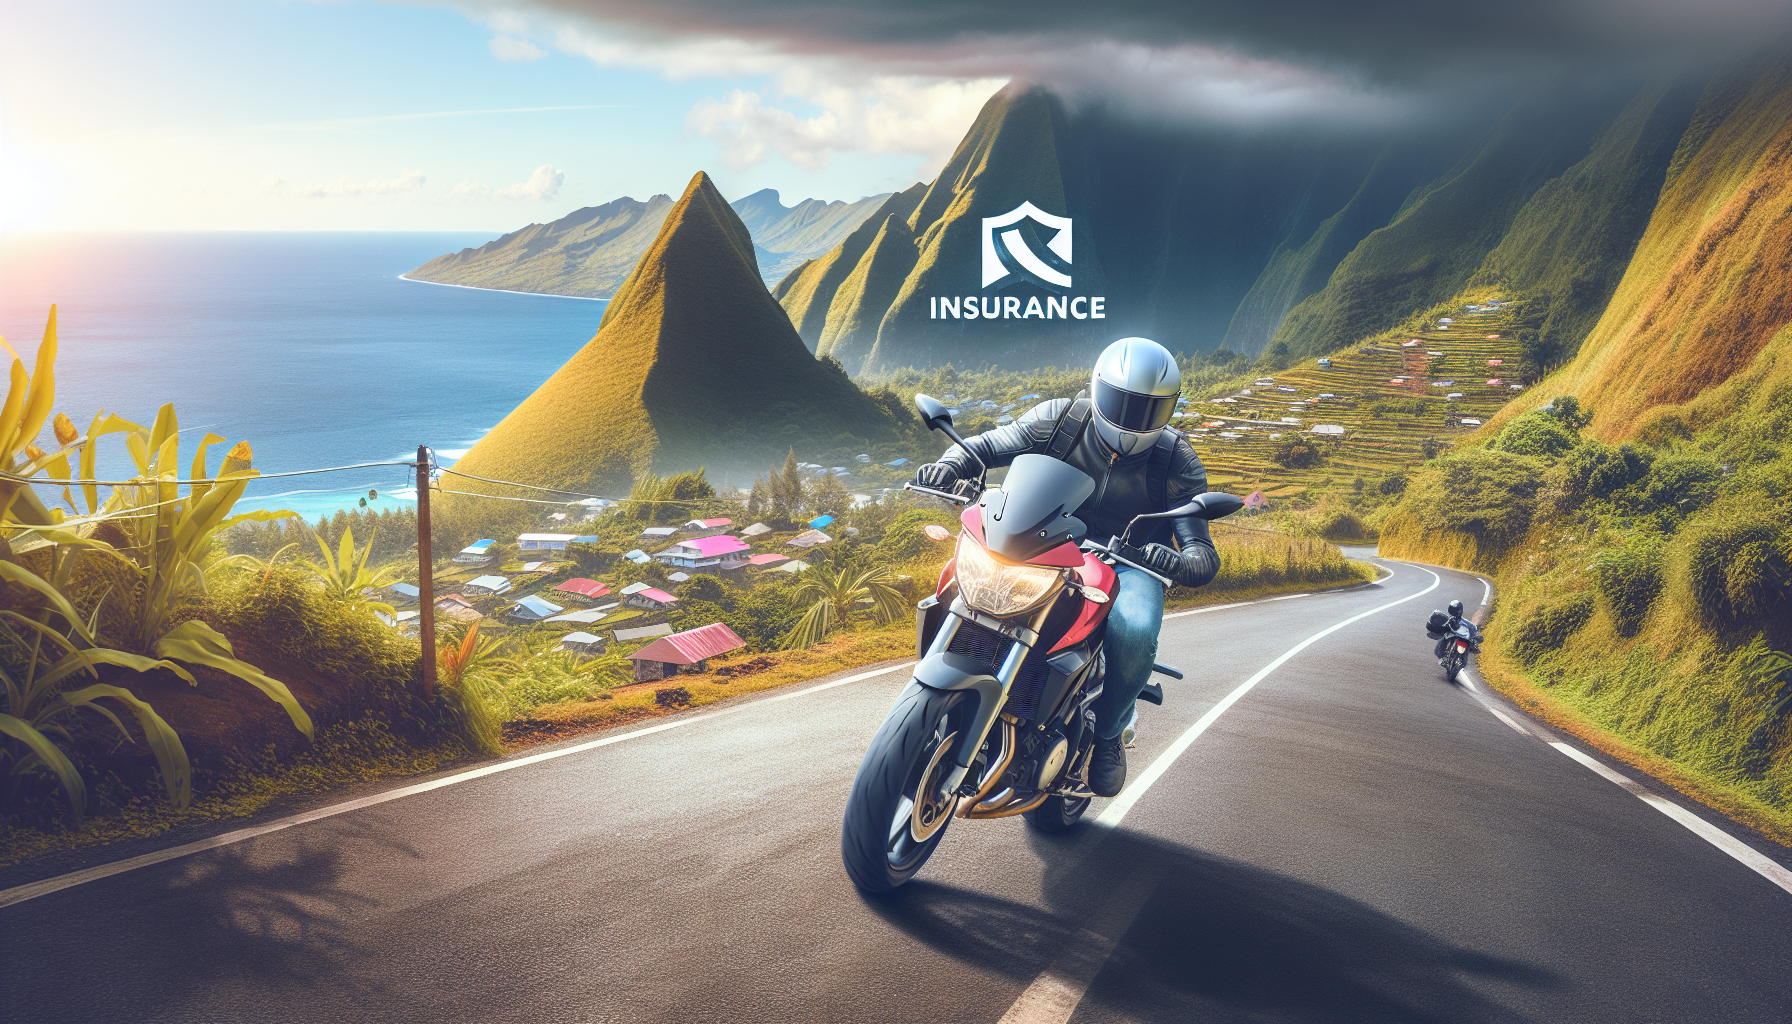 découvrez les garanties optionnelles pour une assurance moto à la réunion avec assurance moto 974. protégez votre deux-roues avec les meilleures options d'assurance adaptées à vos besoins.